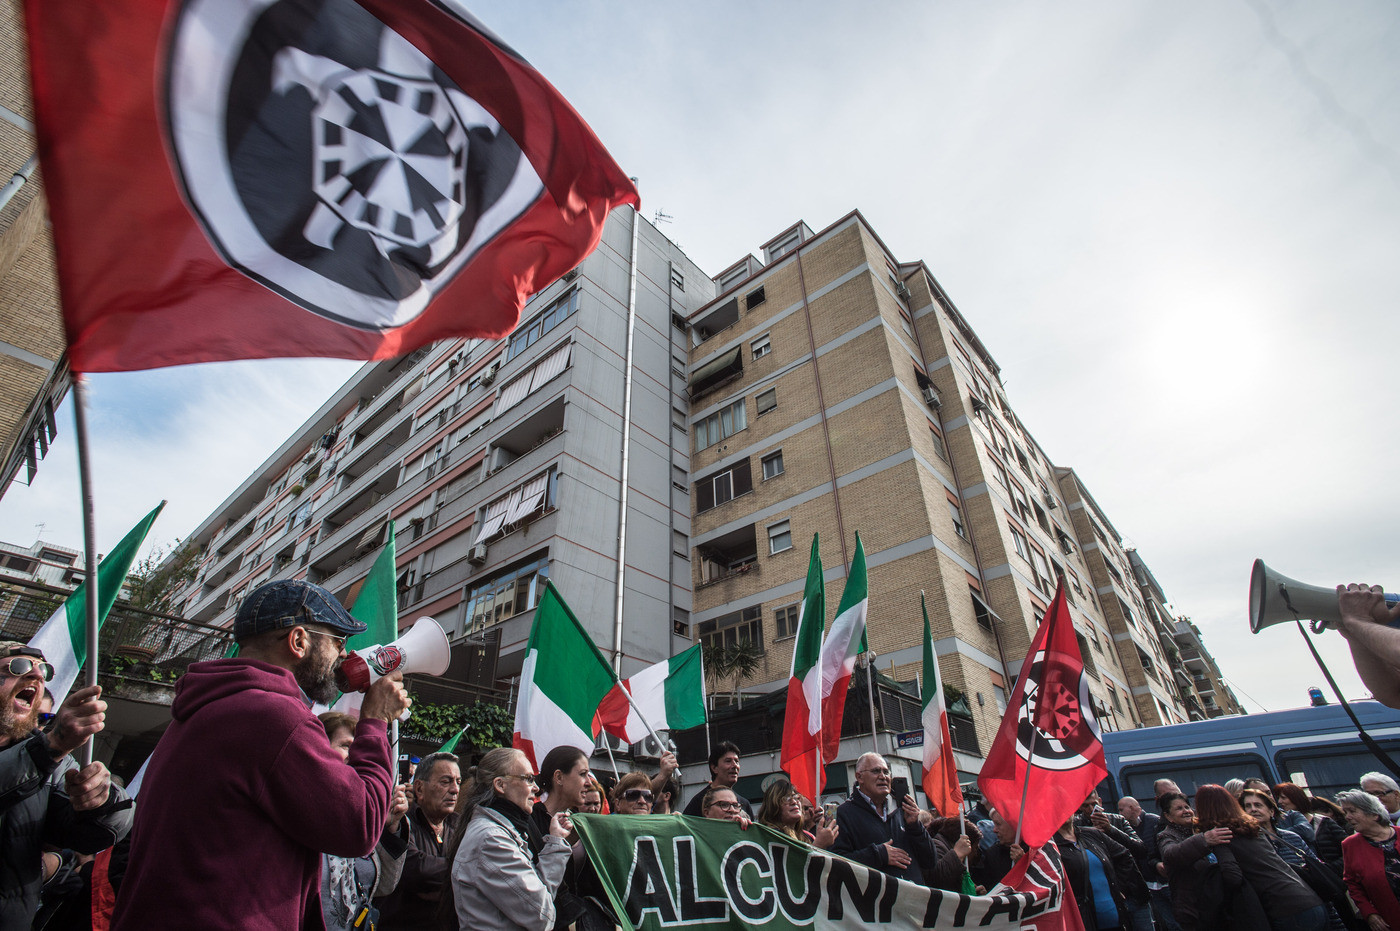 Roma, disordini a Torre Maura e Casal Bruciato: 65 indagati tra l’estrema destra